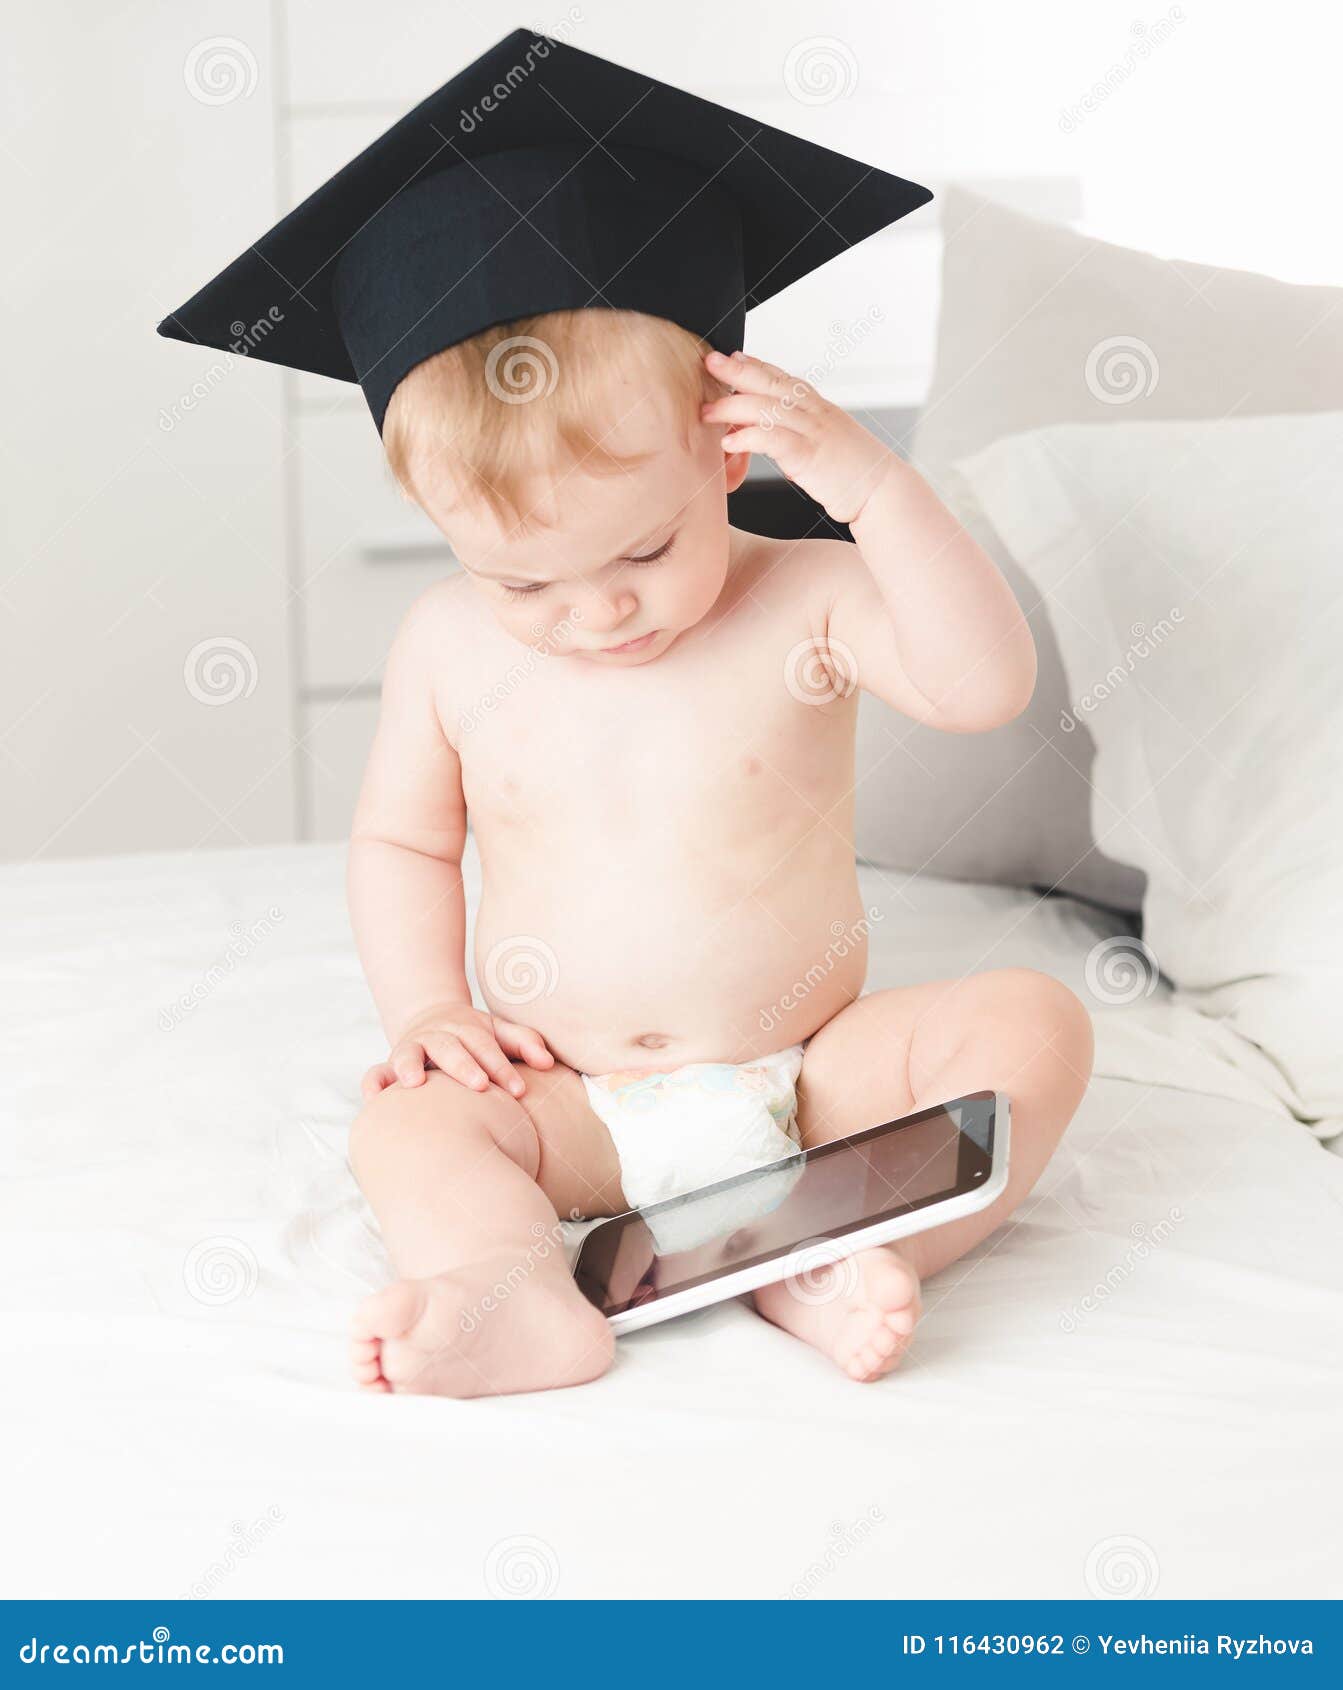 Retrato tonificado da testa vestindo da fricção do chapéu do professor do bebê bonito ao usar a tabuleta digital